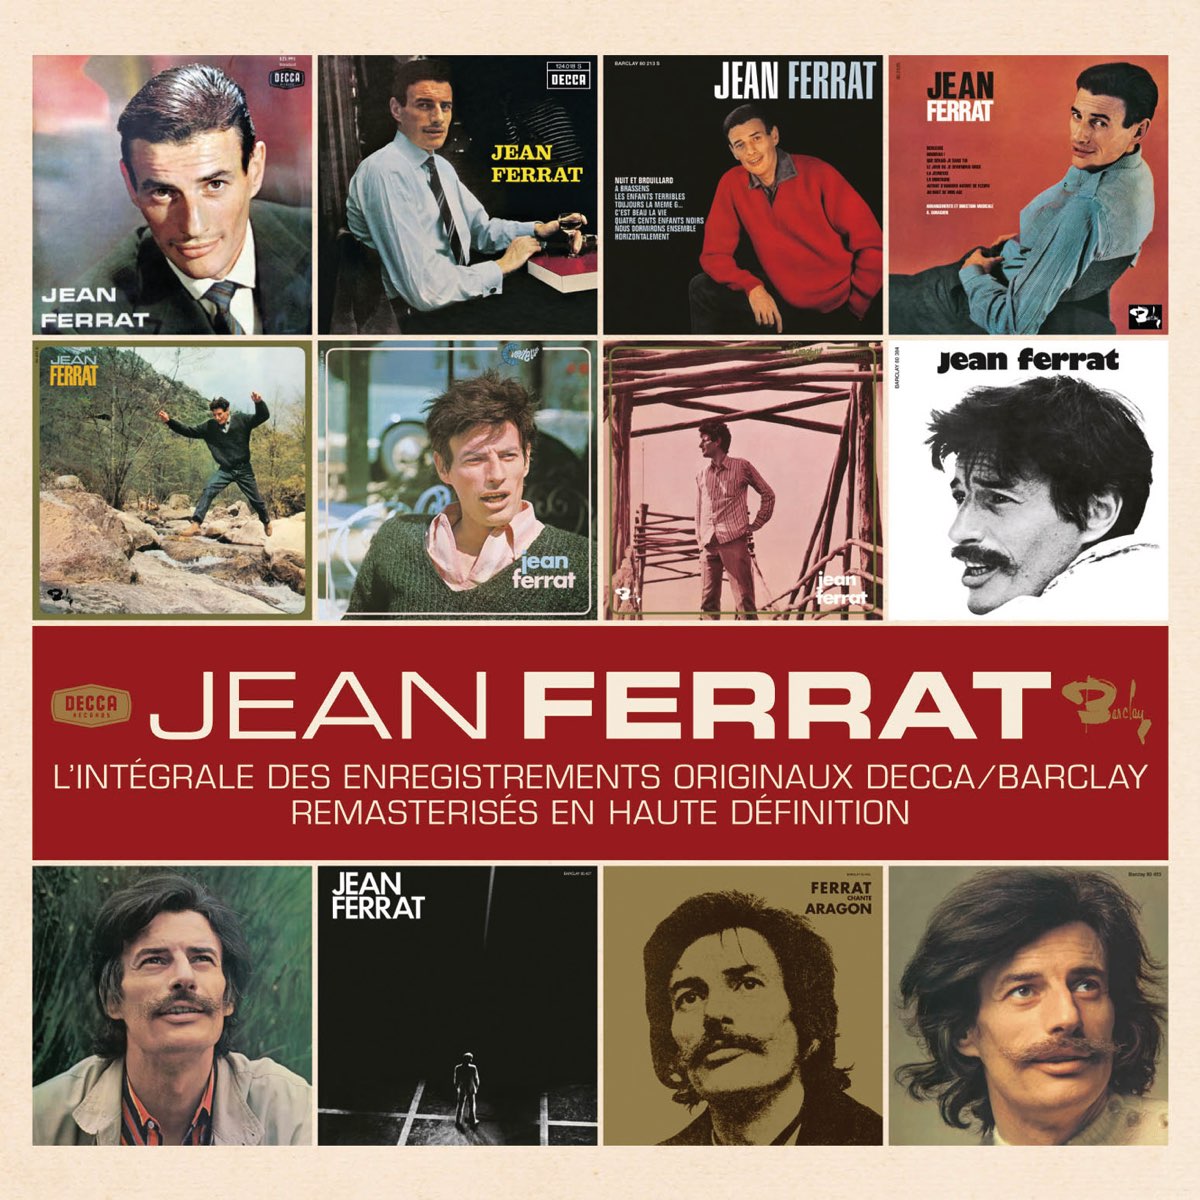 L'intégrale des enregistrements originaux (Decca & Barclay) [Remasterisés]  – Album par Jean Ferrat – Apple Music